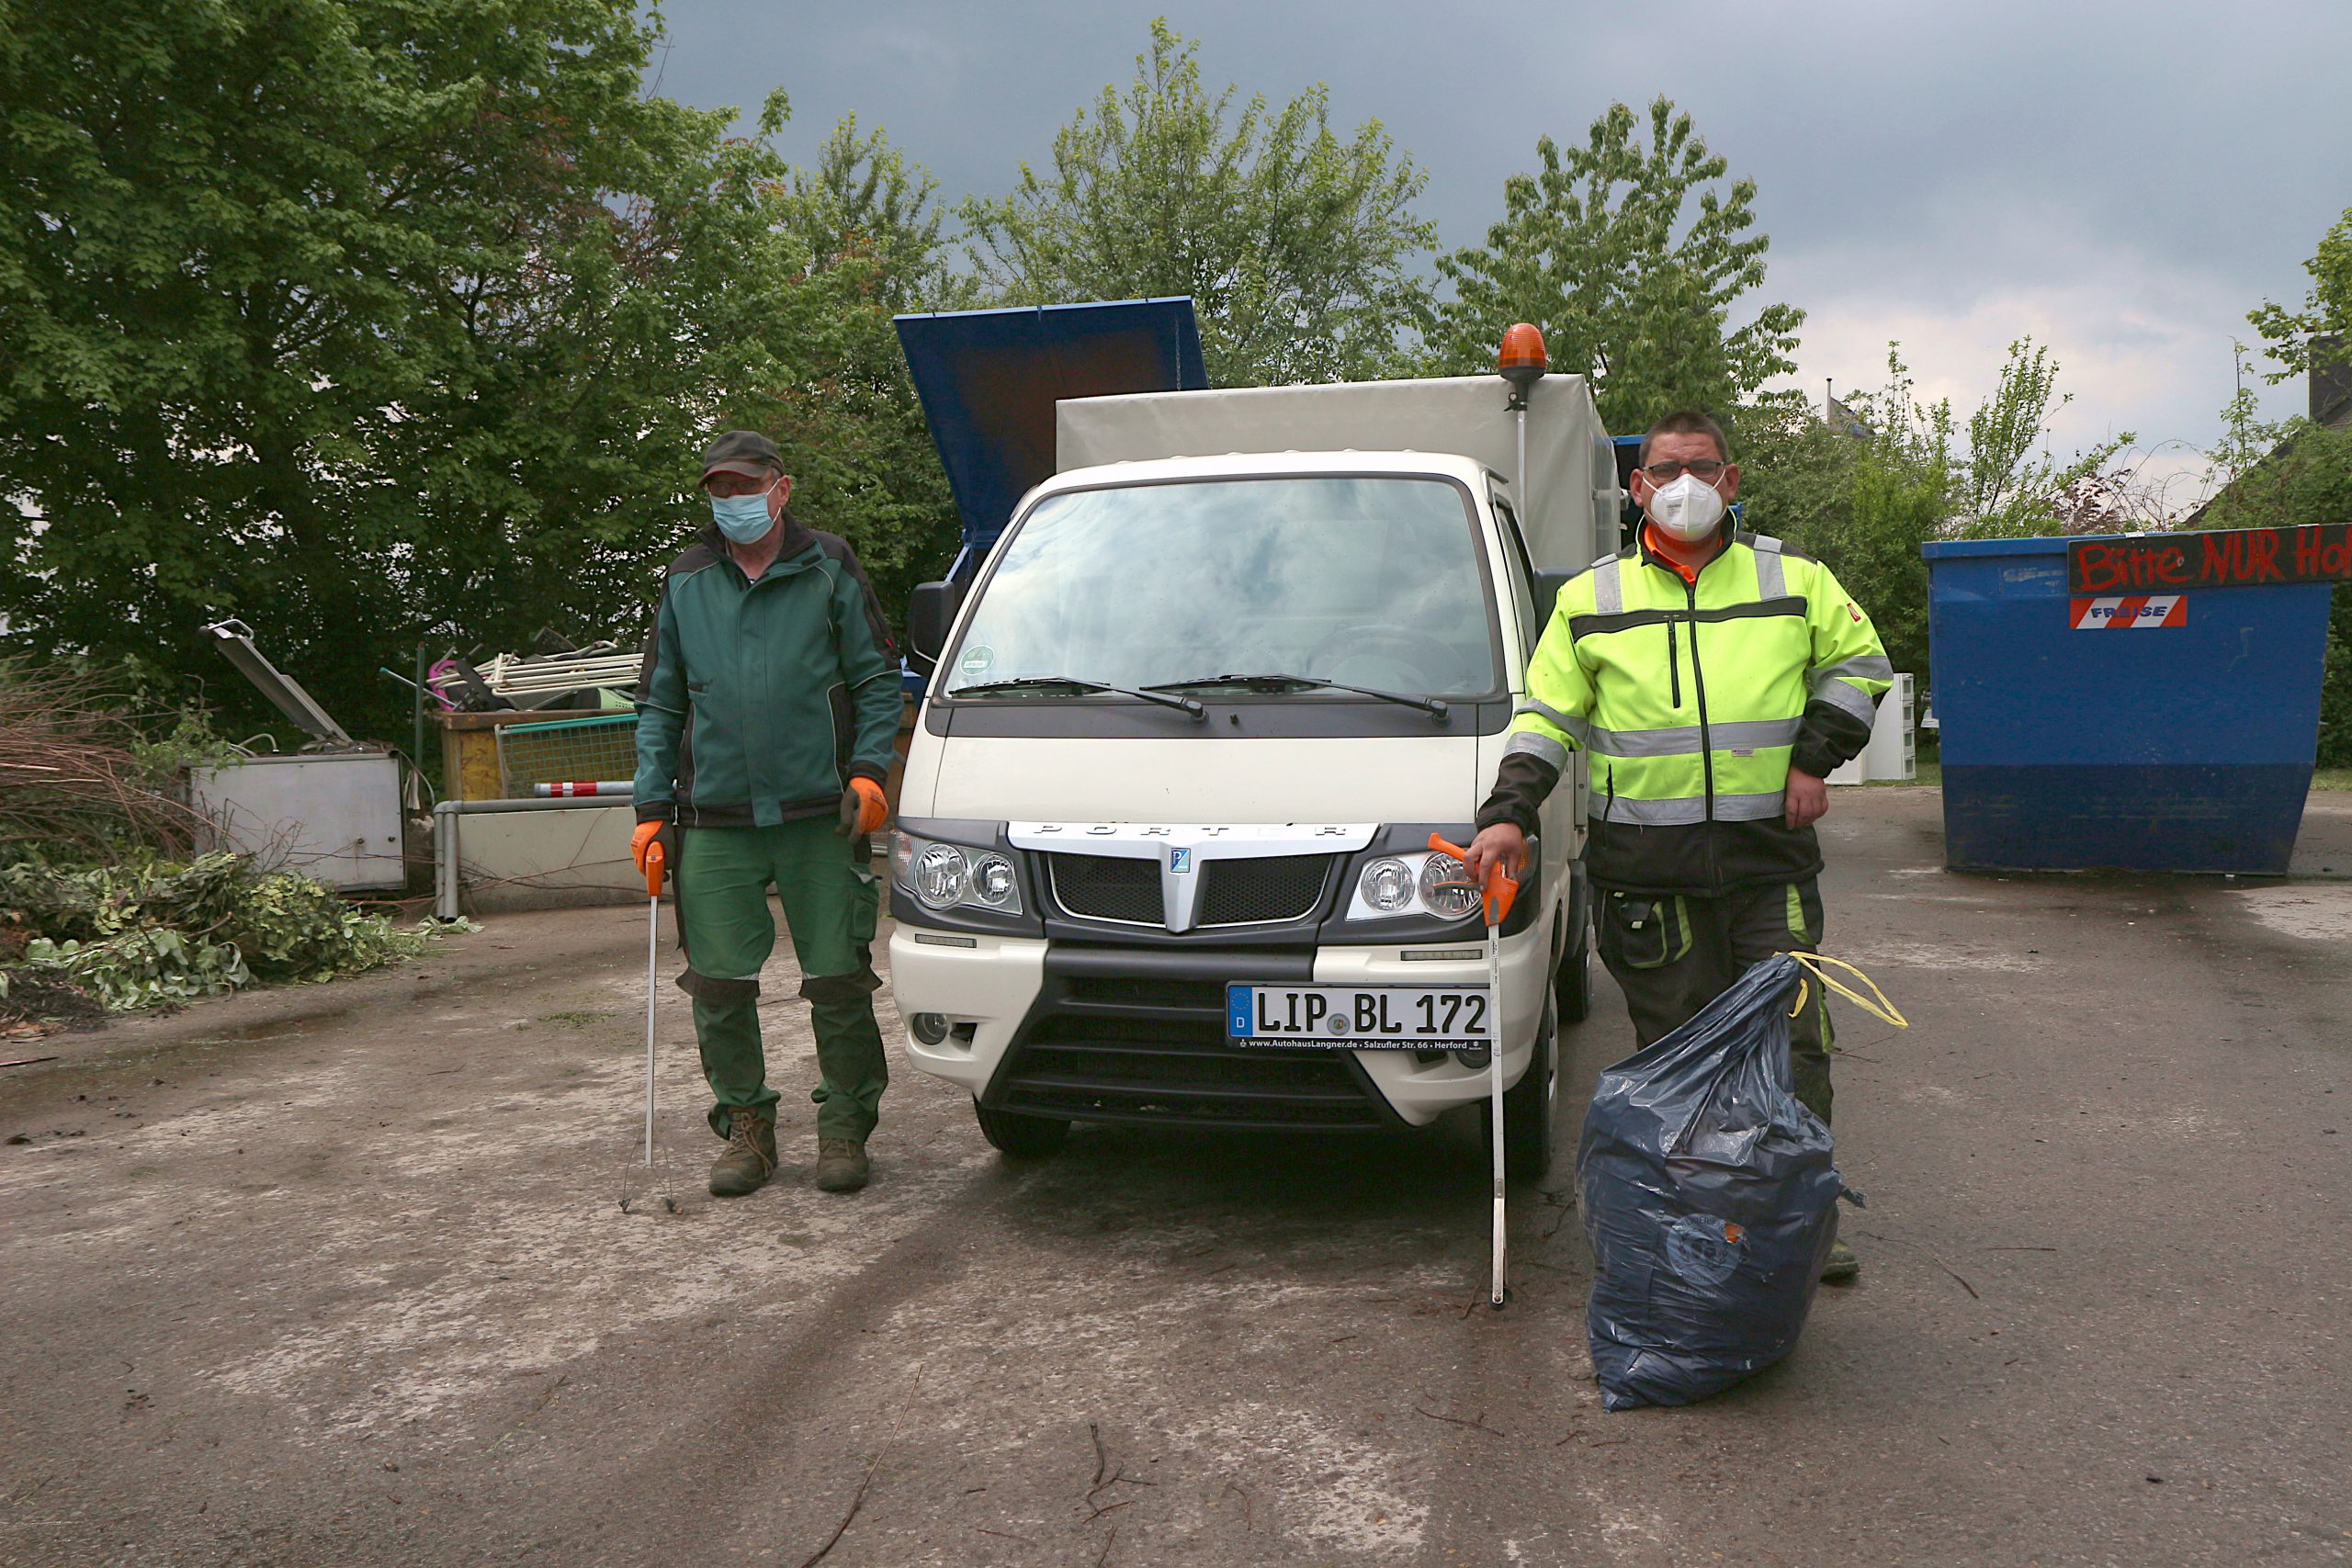 Montags und freitags sind Lothar Rottschäfer (links) und Christian Rentz mit ihrem kleinen Fahrzeug unterwegs, um wilden Müll aufzusammeln. Manchmal müssen sie den großen Laster nachordern. Foto: Thomas Dohna